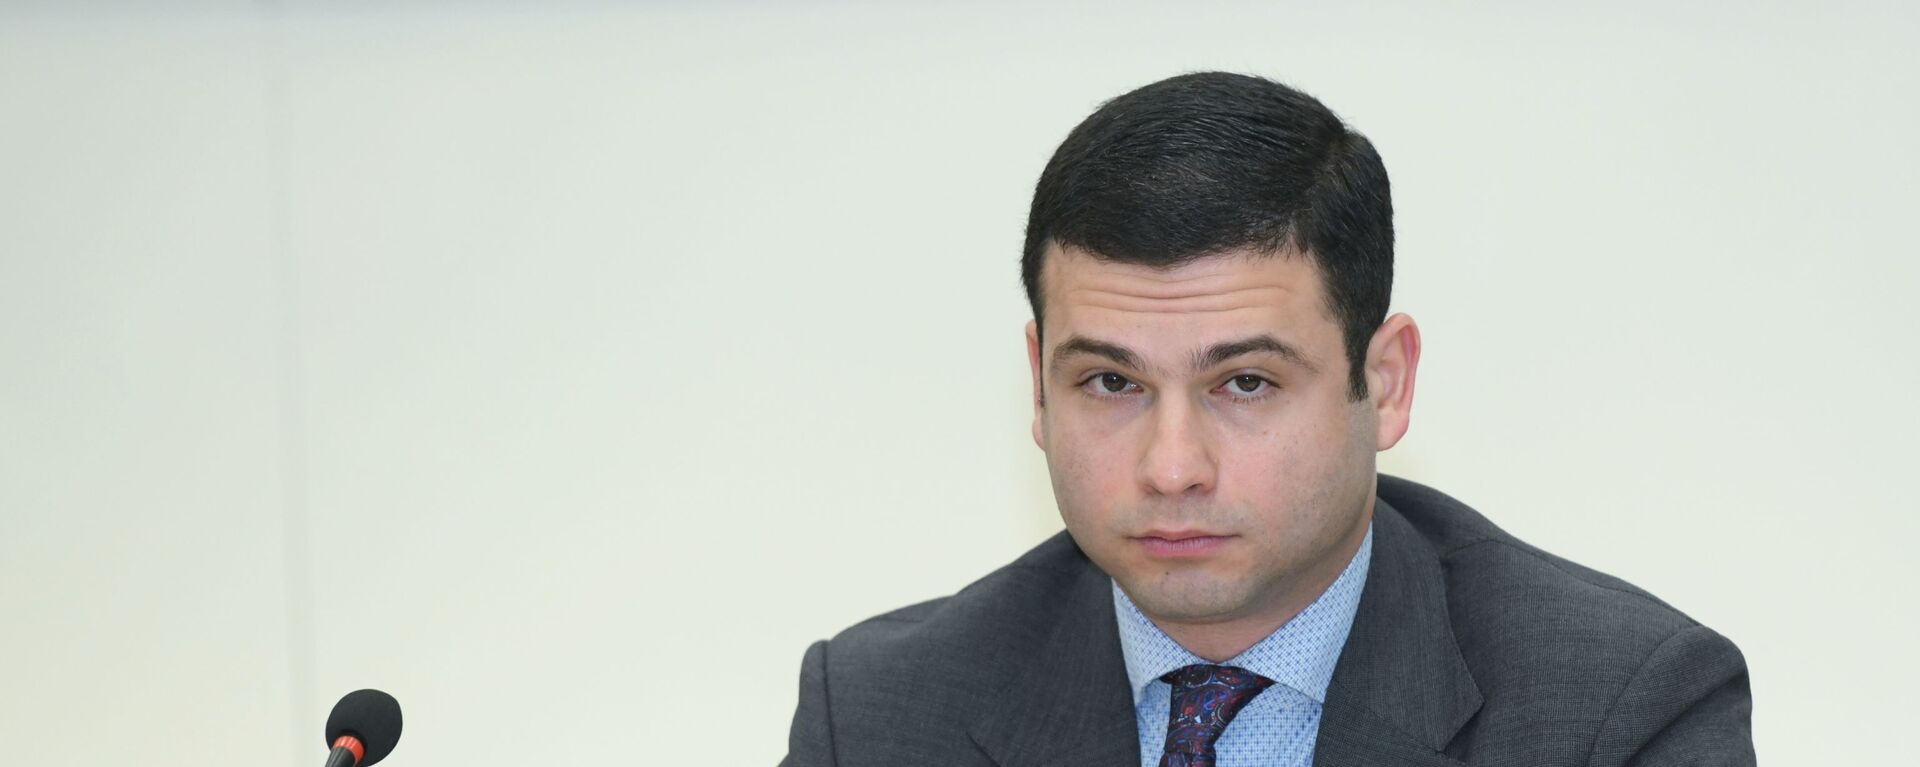 Председатель правления Агентства по развитию малого и среднего бизнеса (МСБ) Орхан Мамедов - Sputnik Азербайджан, 1920, 02.03.2021